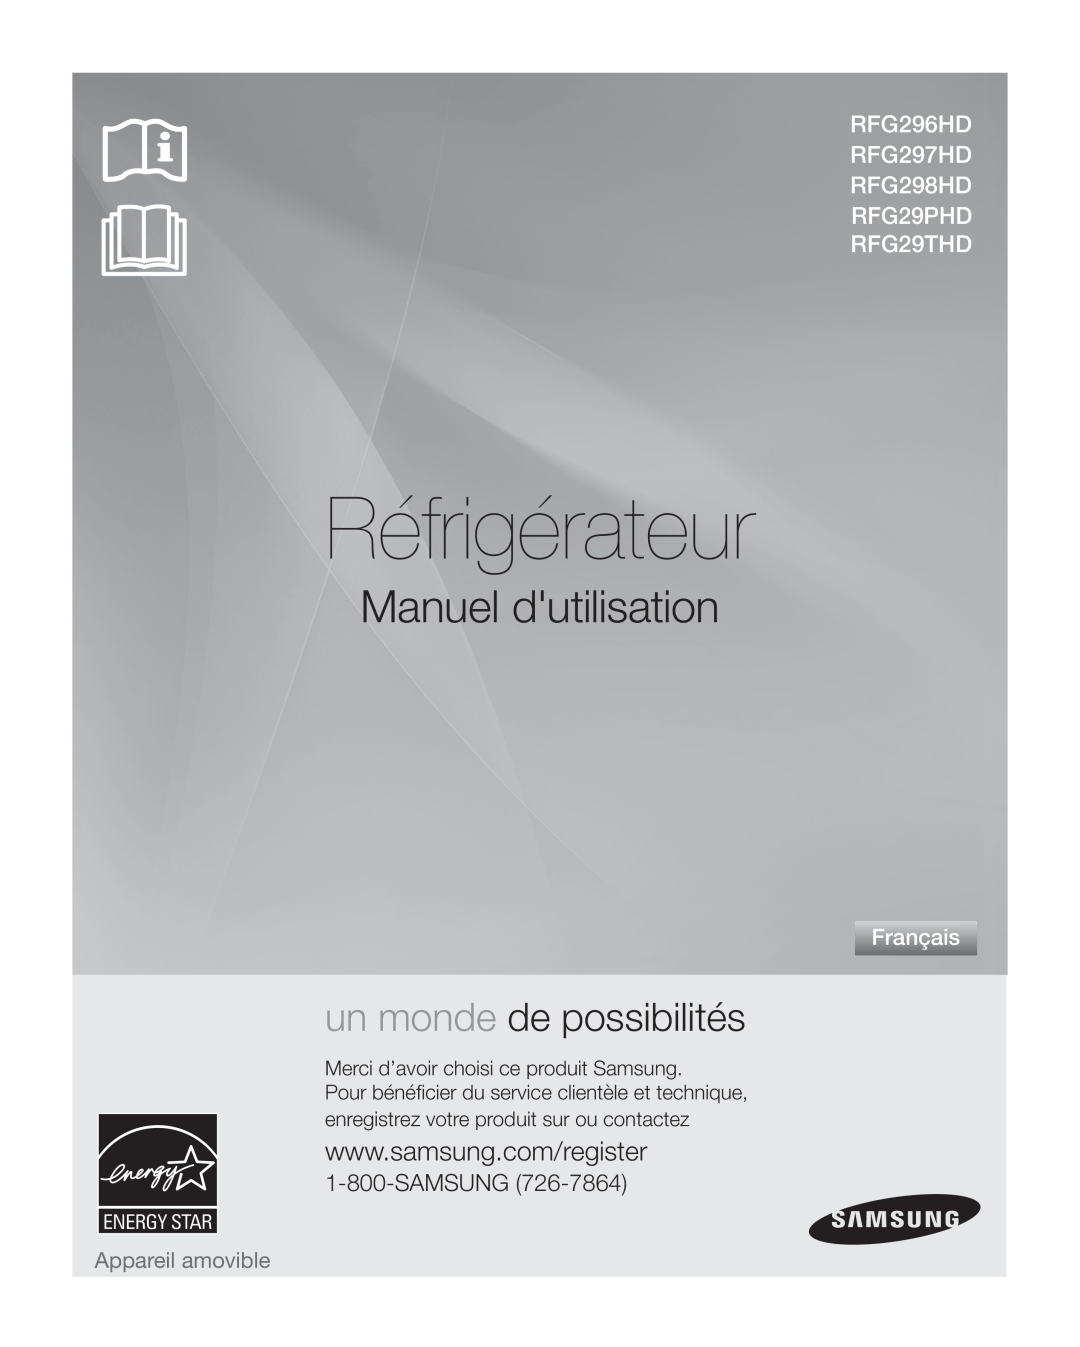 Samsung RFG297HD Réfrigérateur, Manuel dutilisation, un monde de possibilités, Français, Appareil amovible, Samsung 